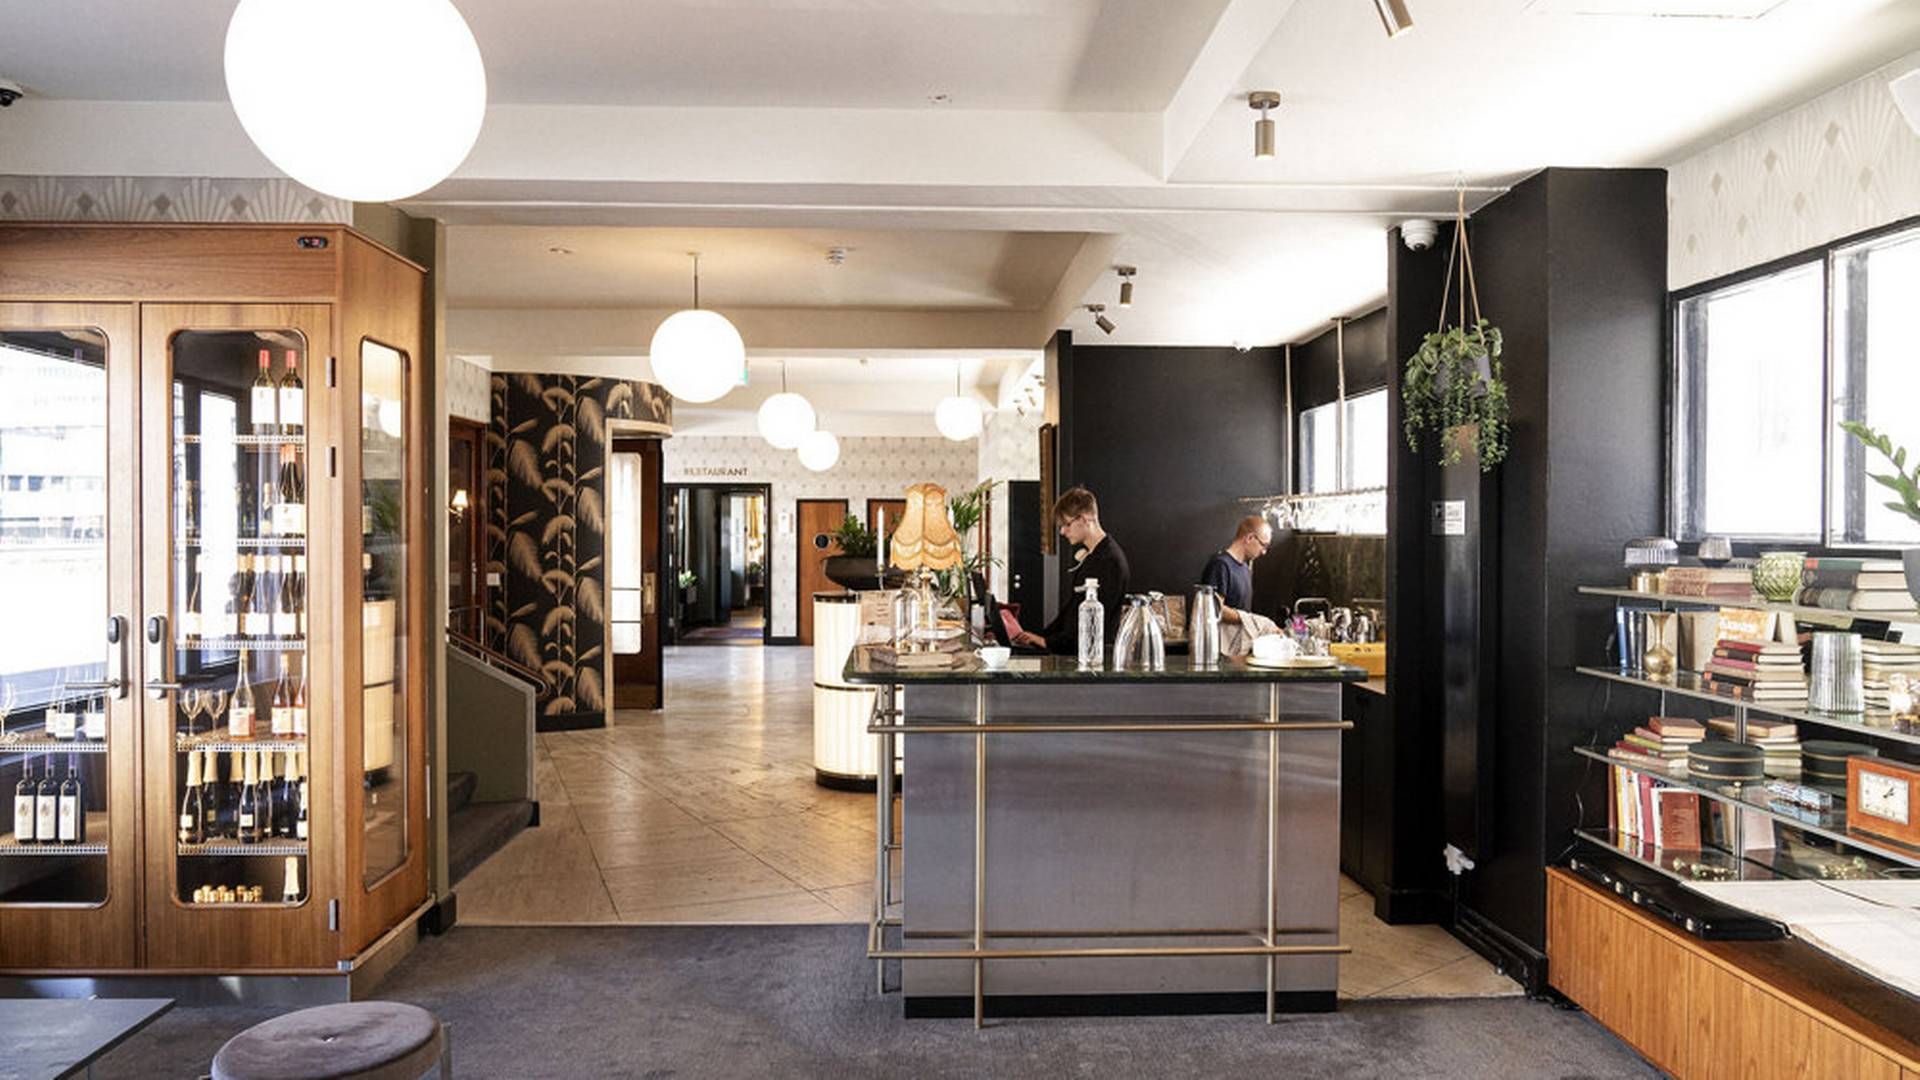 Det er blandt andet fremgang i hotel- og restaurationsbranchen, der ifølge Danmarks Statistik har fået dansk økonomi tilbage på sporet i andet kvartal. (Arkivfoto) | Foto: Mathias Svold/Ritzau Scanpix